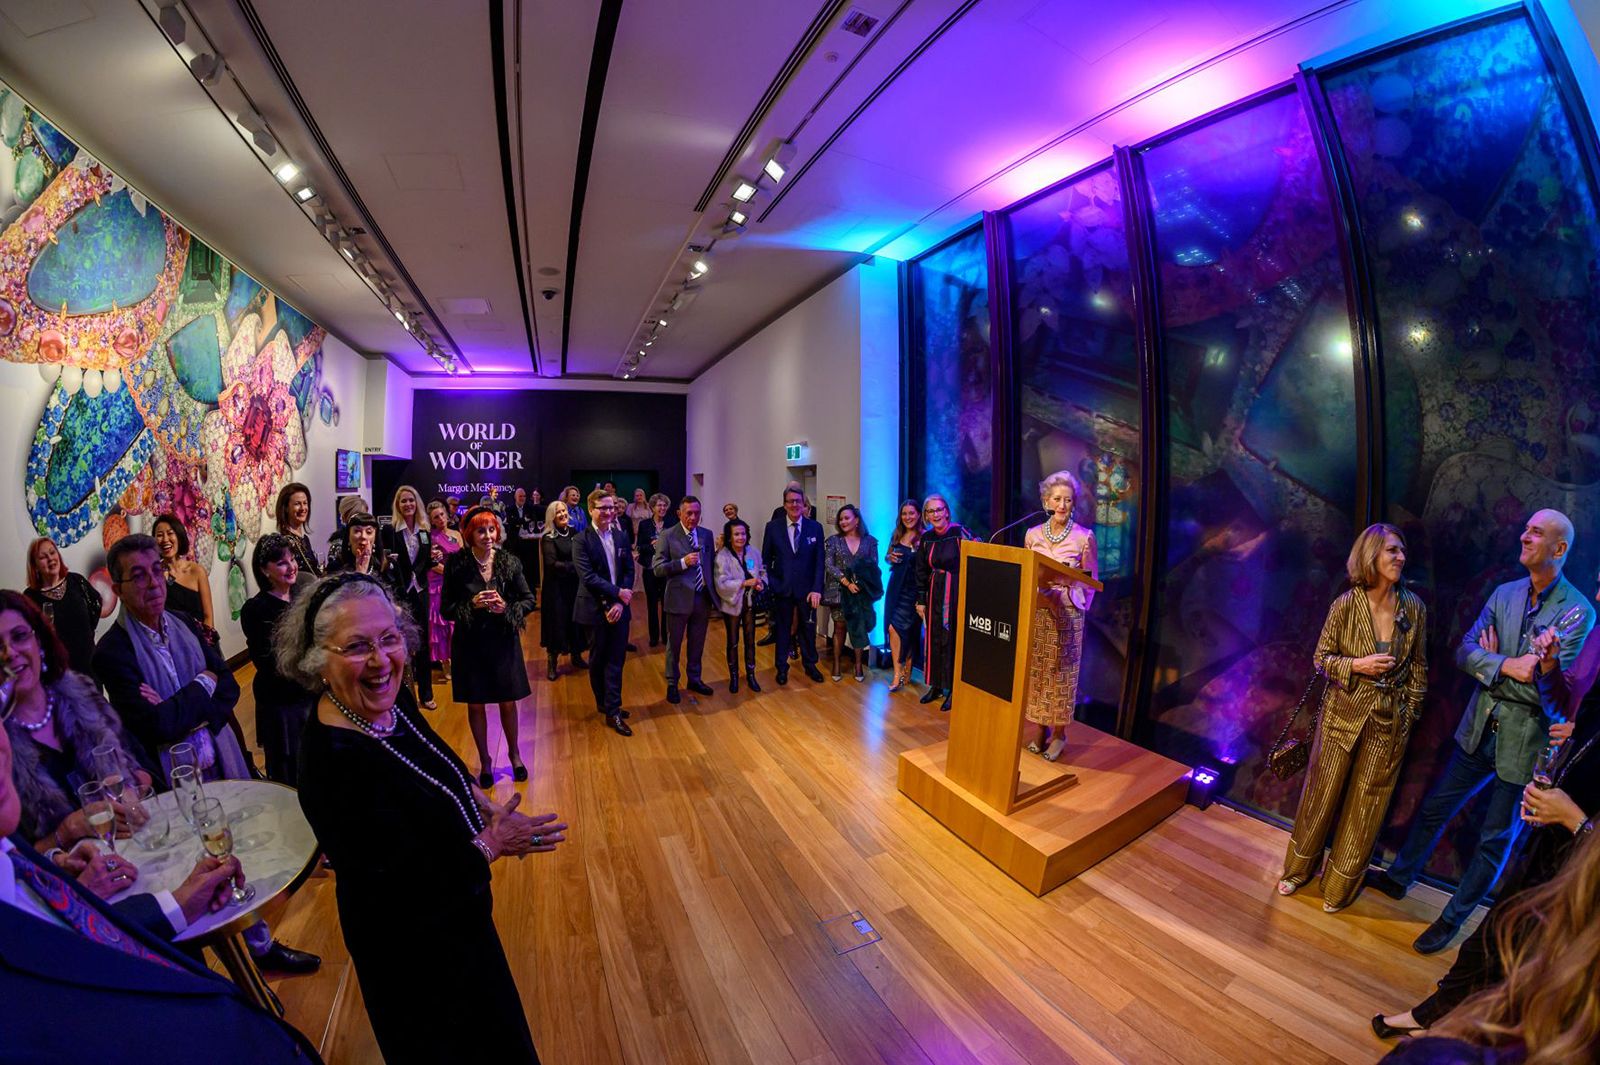 Opening ceremony at World of Wonder: Margot McKinney Exhibition in Brisbane, Australia